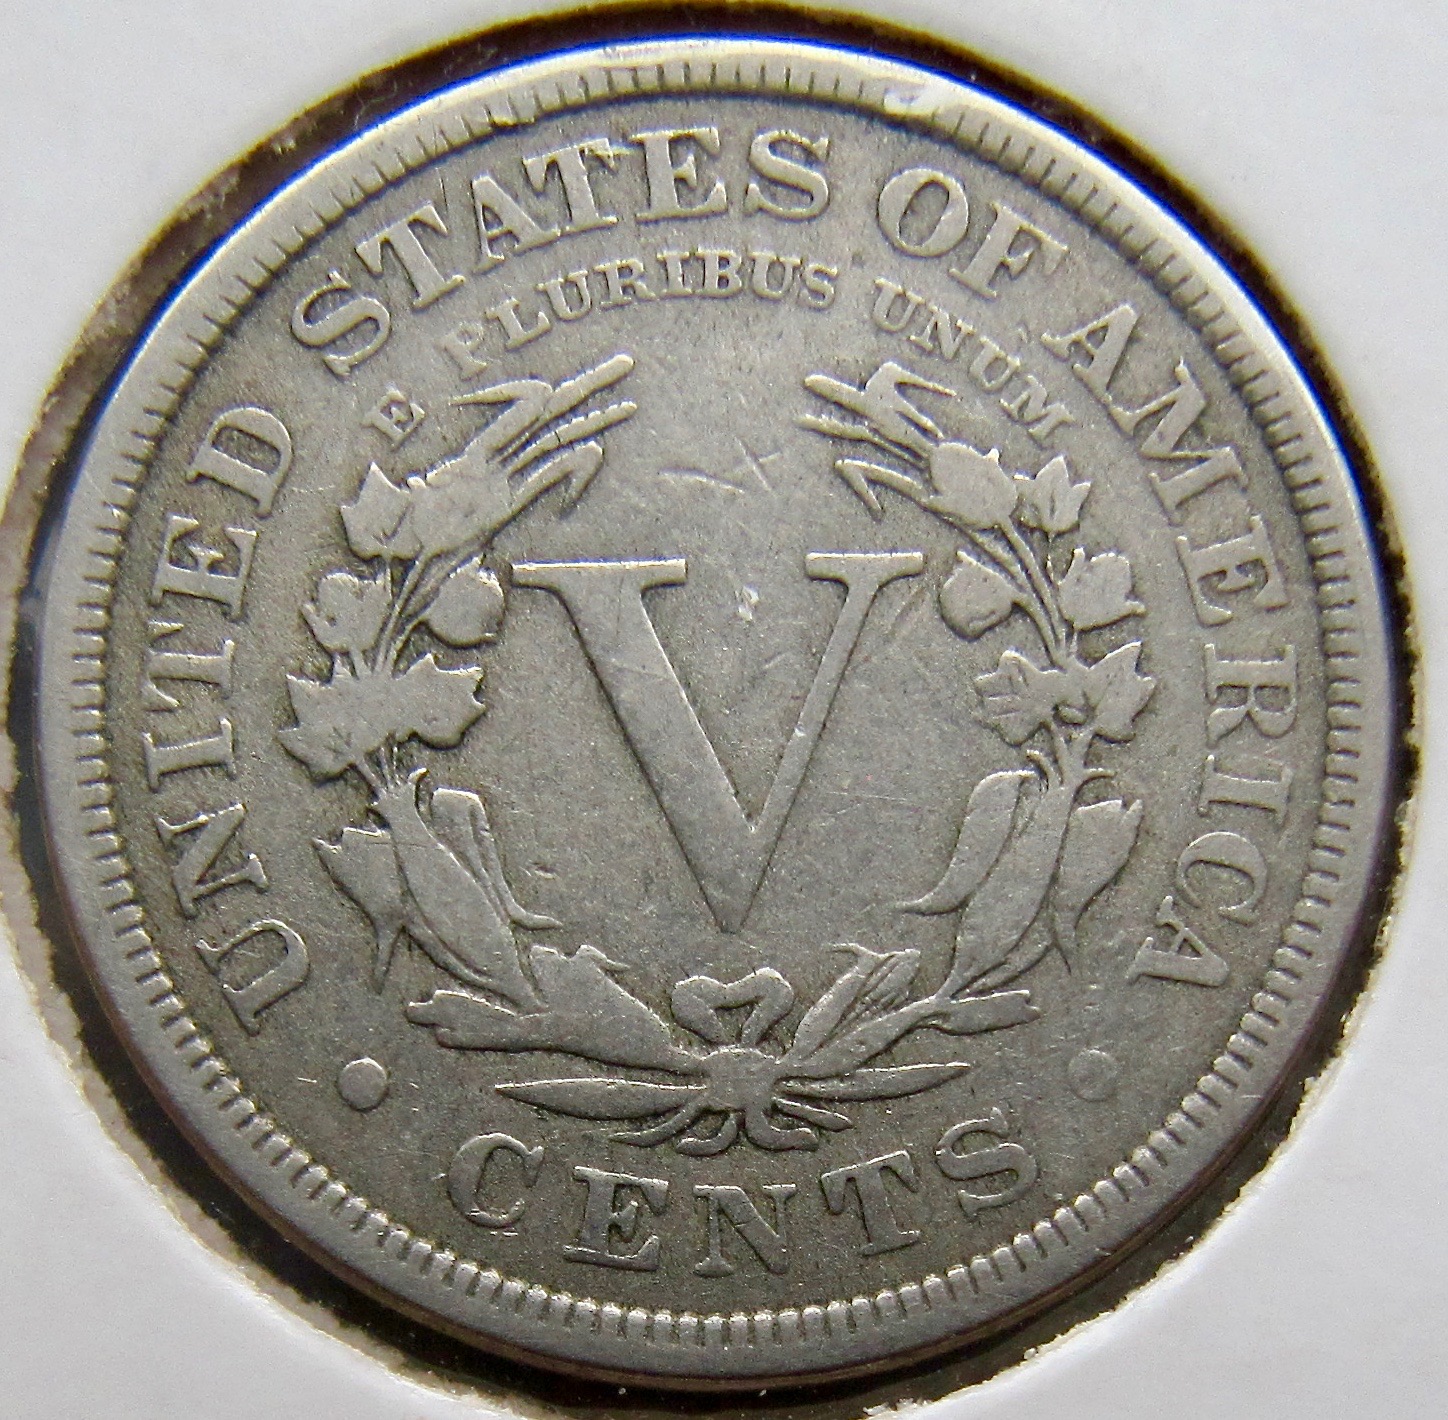 1886 5 cent nickel rev1 N  - 1.jpg